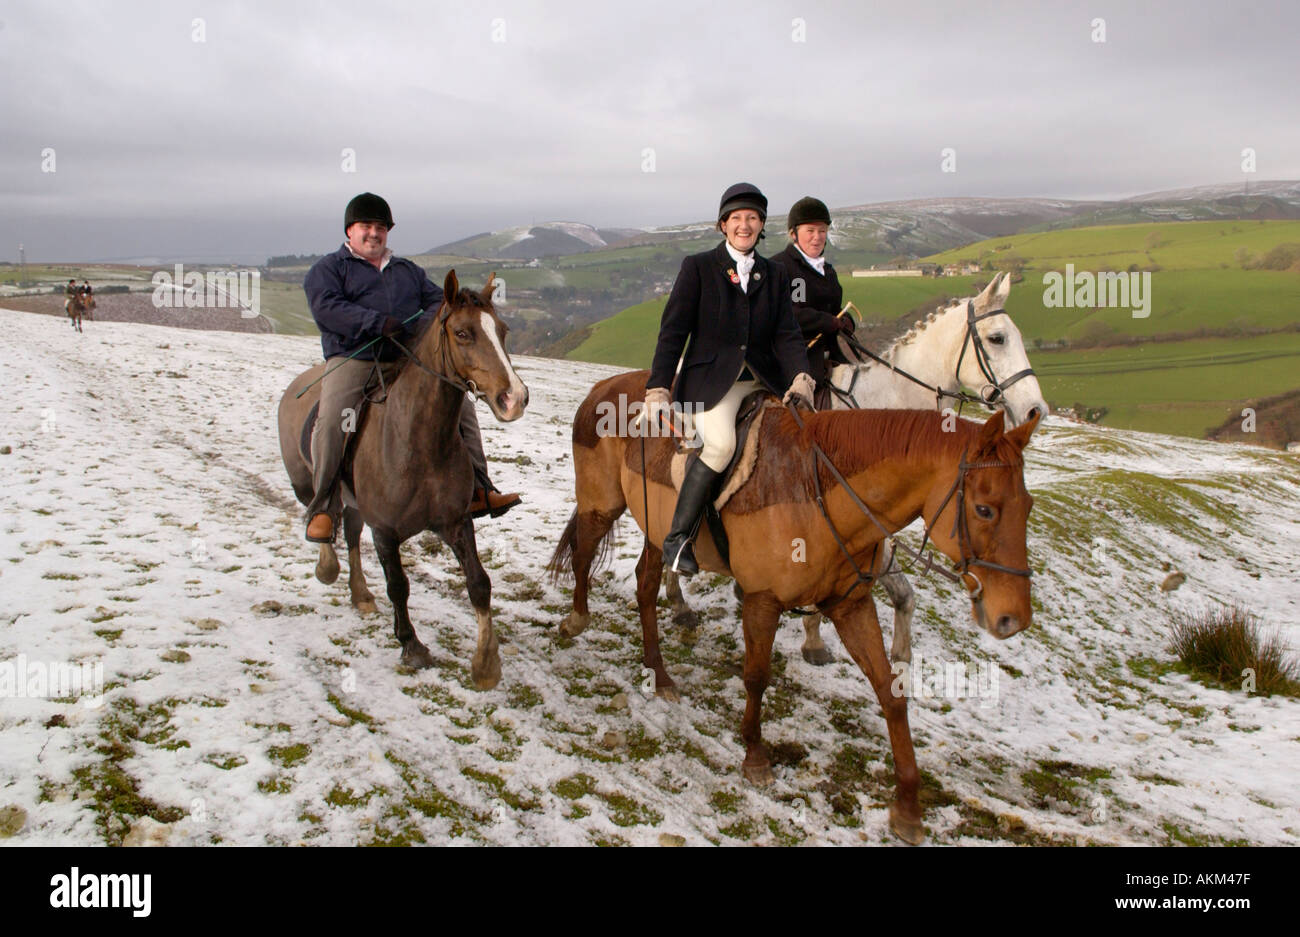 Une partie de l'équitation à travers la recherche de Llangeinor colline au-dessus de Blackmill près de Bridgend sur le Boxing Day annuel Fox hunt Banque D'Images